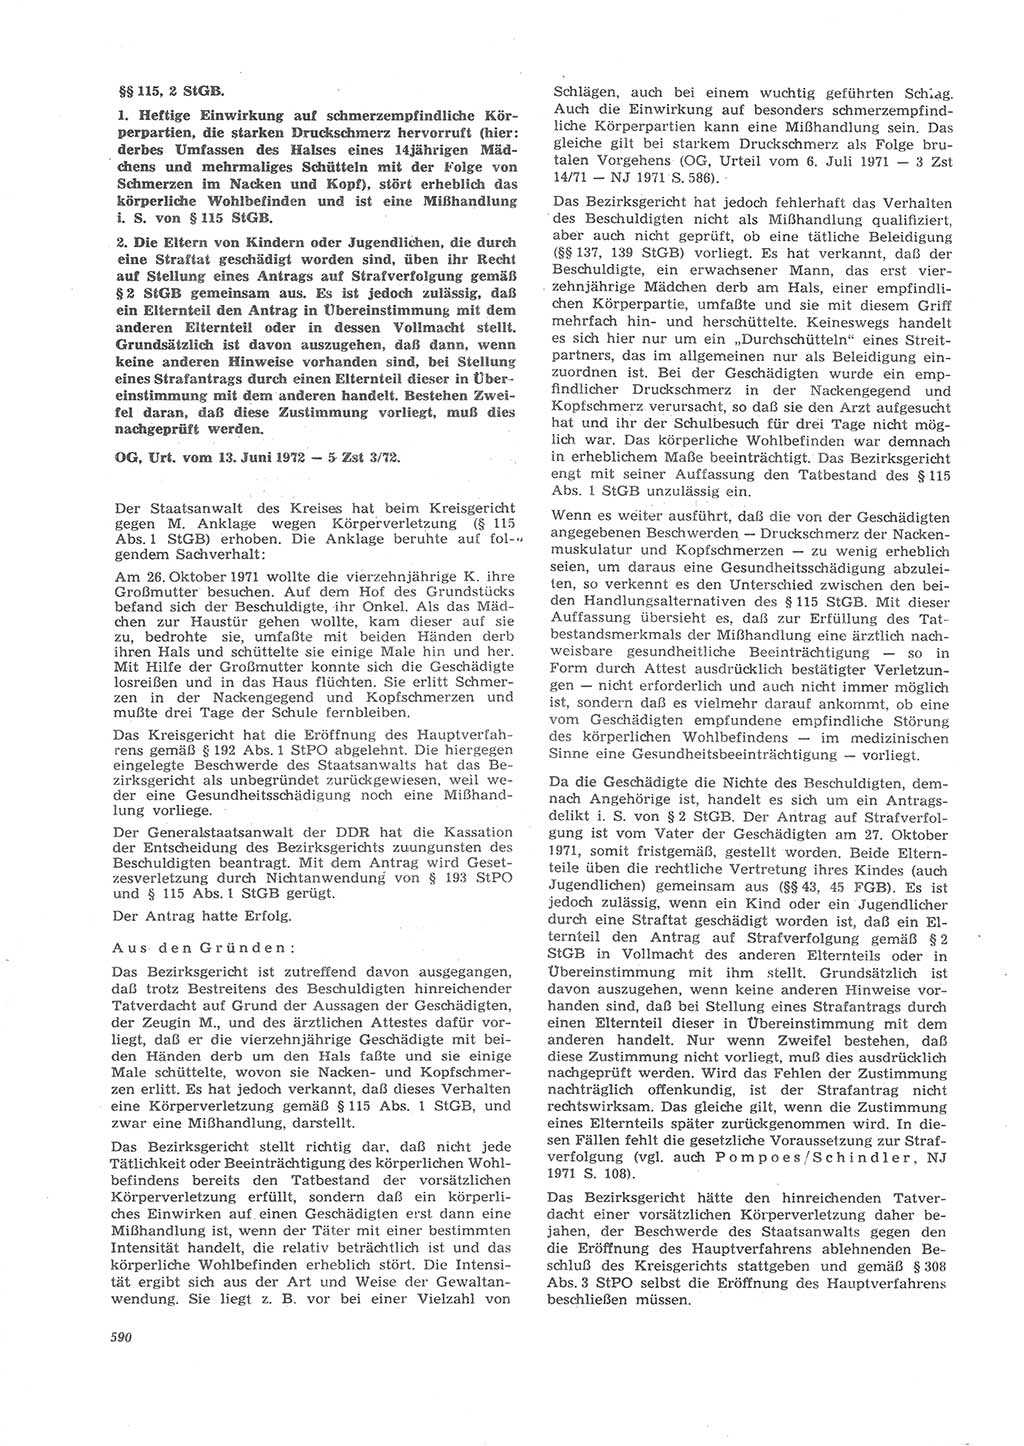 Neue Justiz (NJ), Zeitschrift für Recht und Rechtswissenschaft [Deutsche Demokratische Republik (DDR)], 26. Jahrgang 1972, Seite 590 (NJ DDR 1972, S. 590)